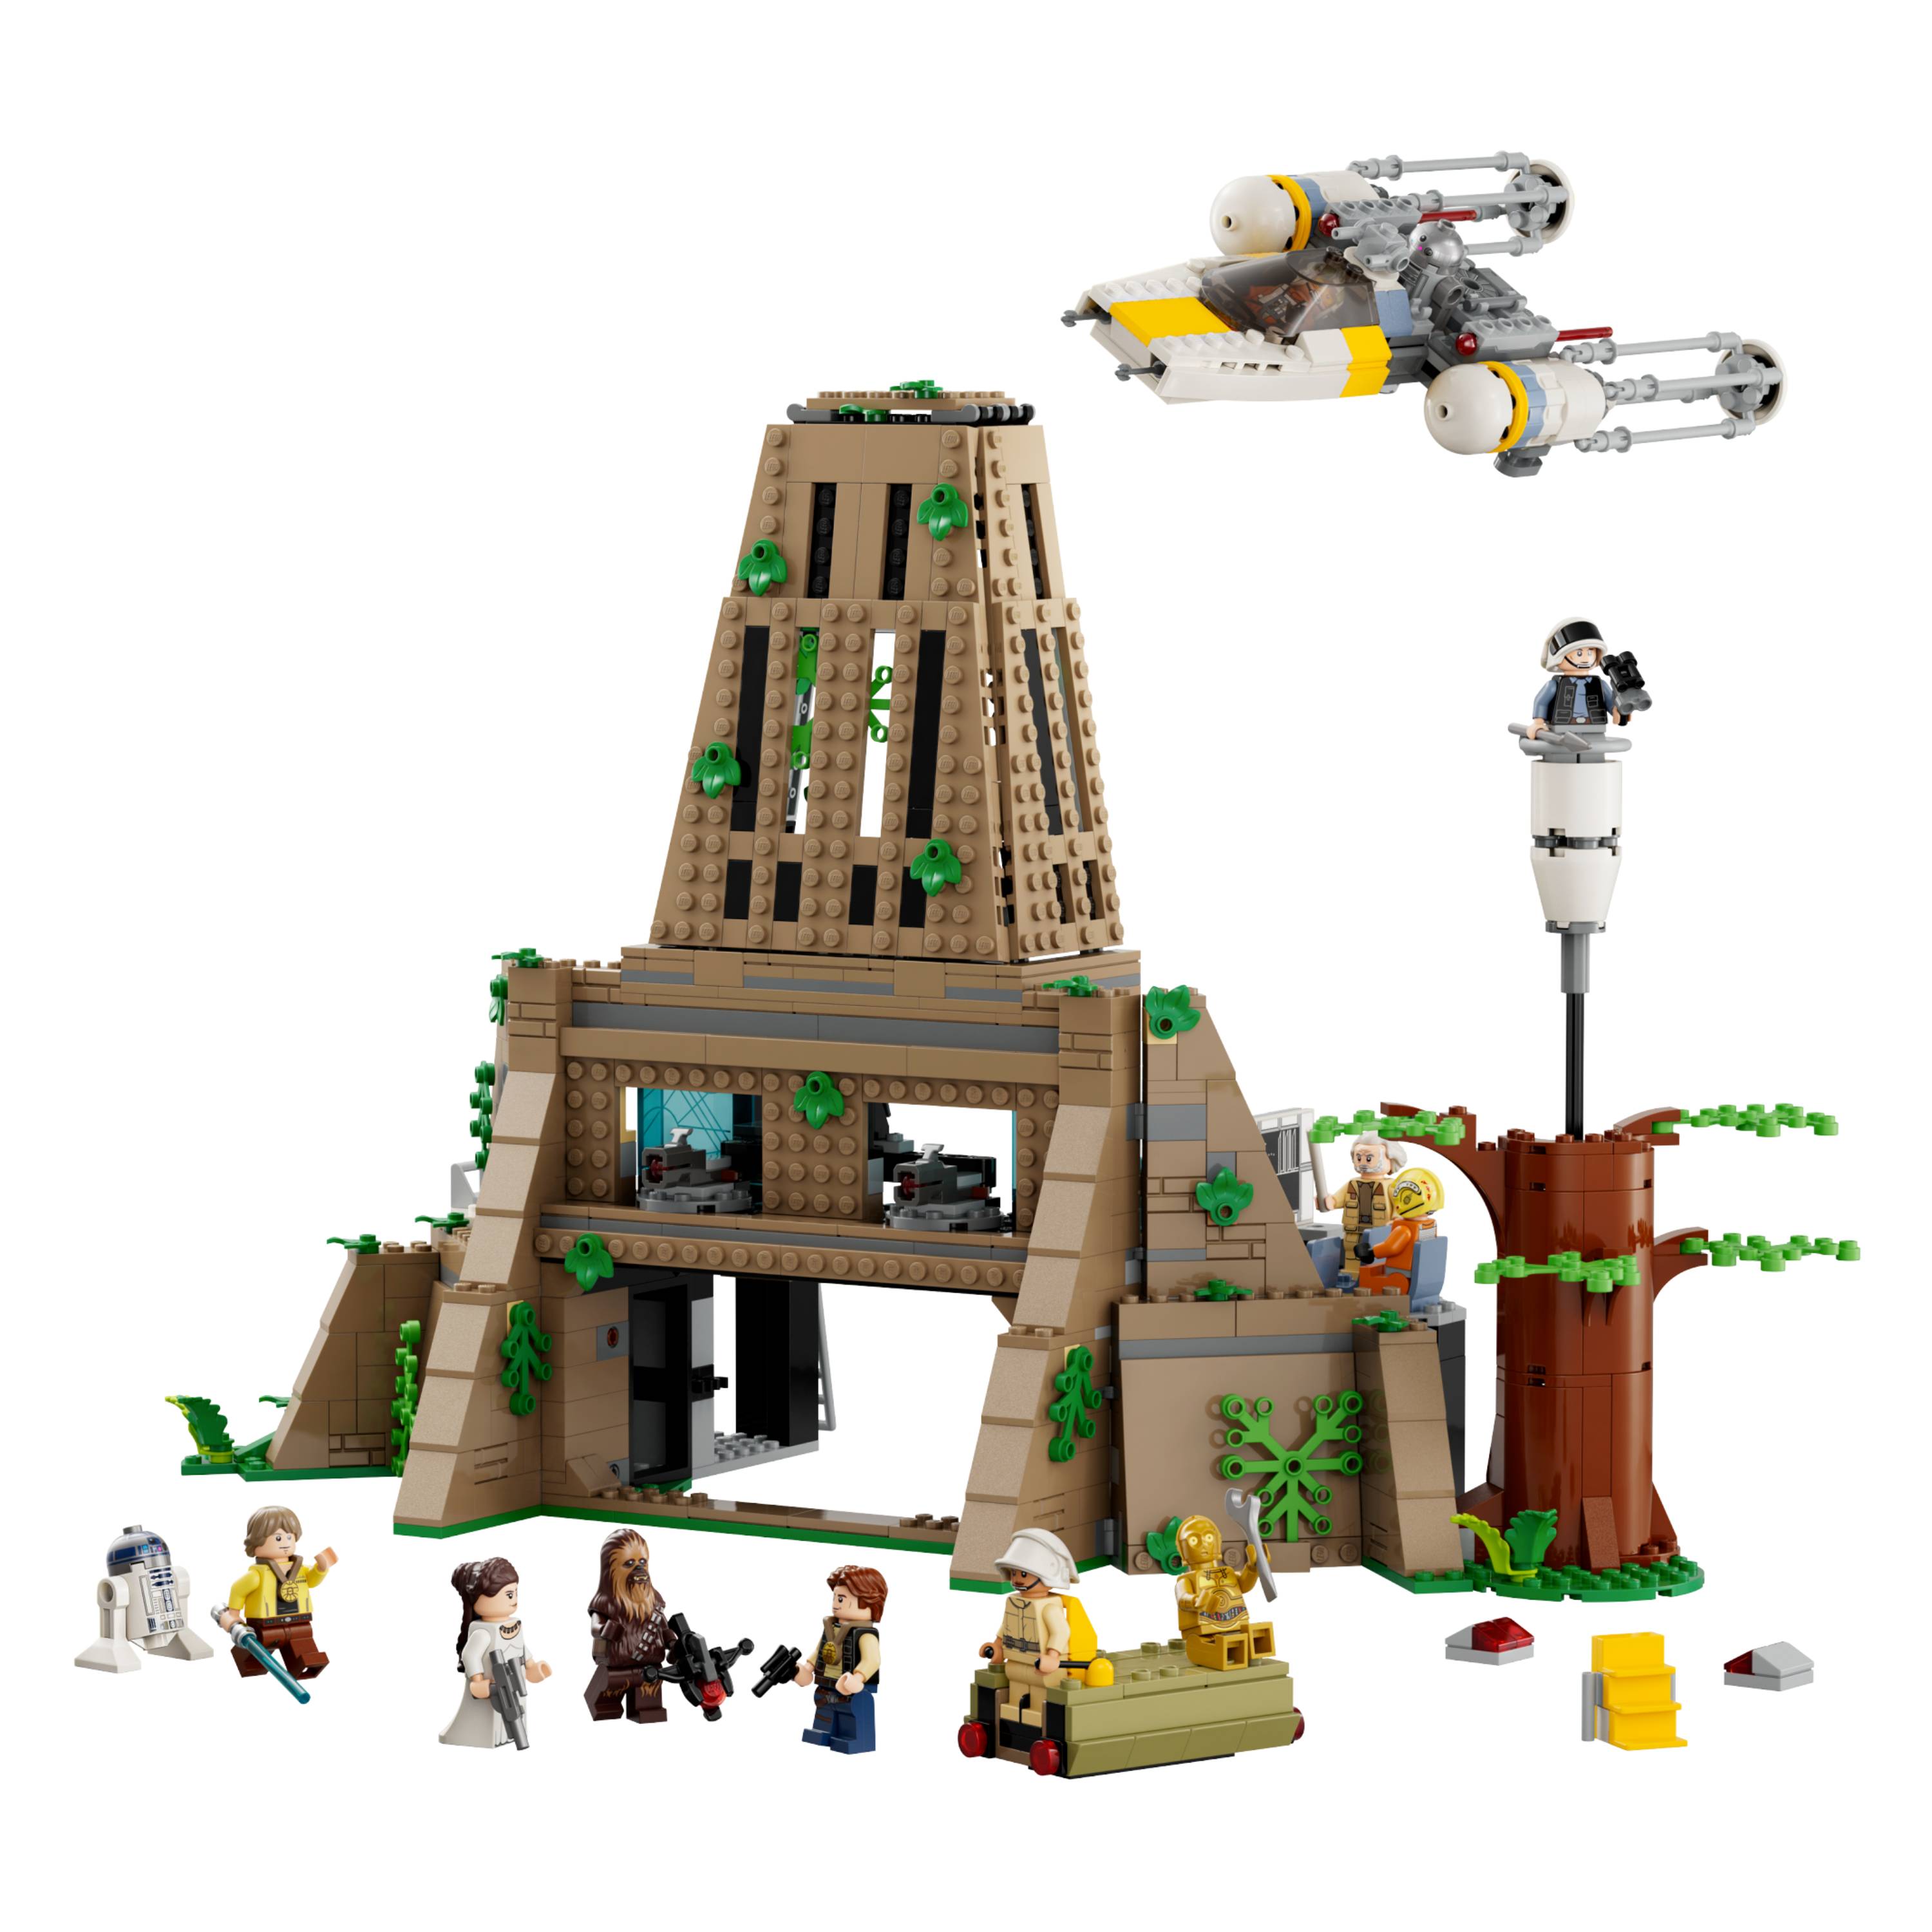 Lego - Construções em 5 minutos - Catapulta